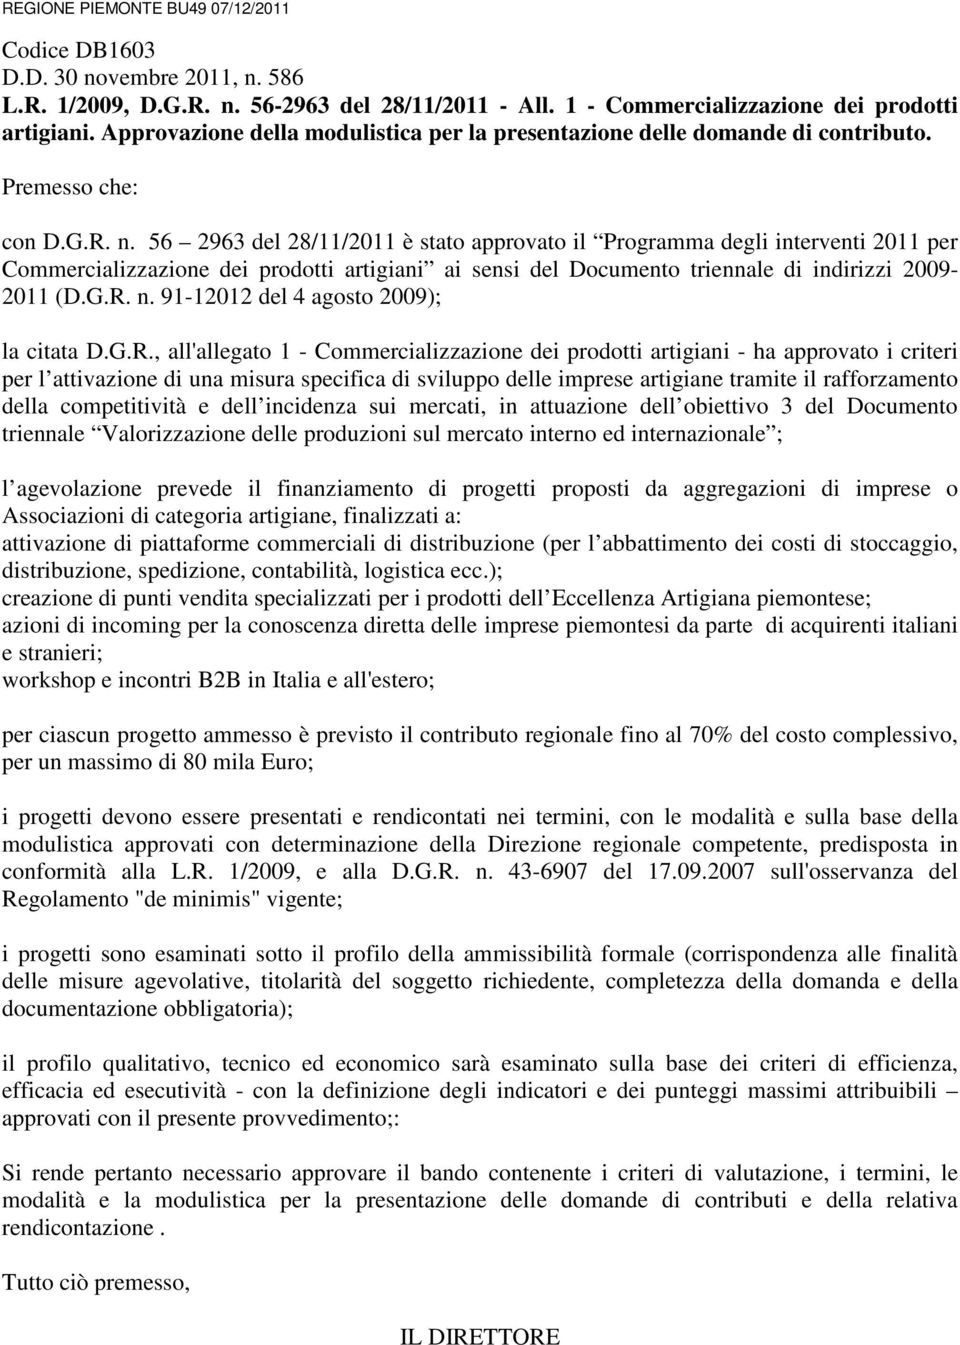 56 2963 del 28/11/2011 è stato approvato il Programma degli interventi 2011 per Commercializzazione dei prodotti artigiani ai sensi del Documento triennale di indirizzi 2009-2011 (D.G.R. n.